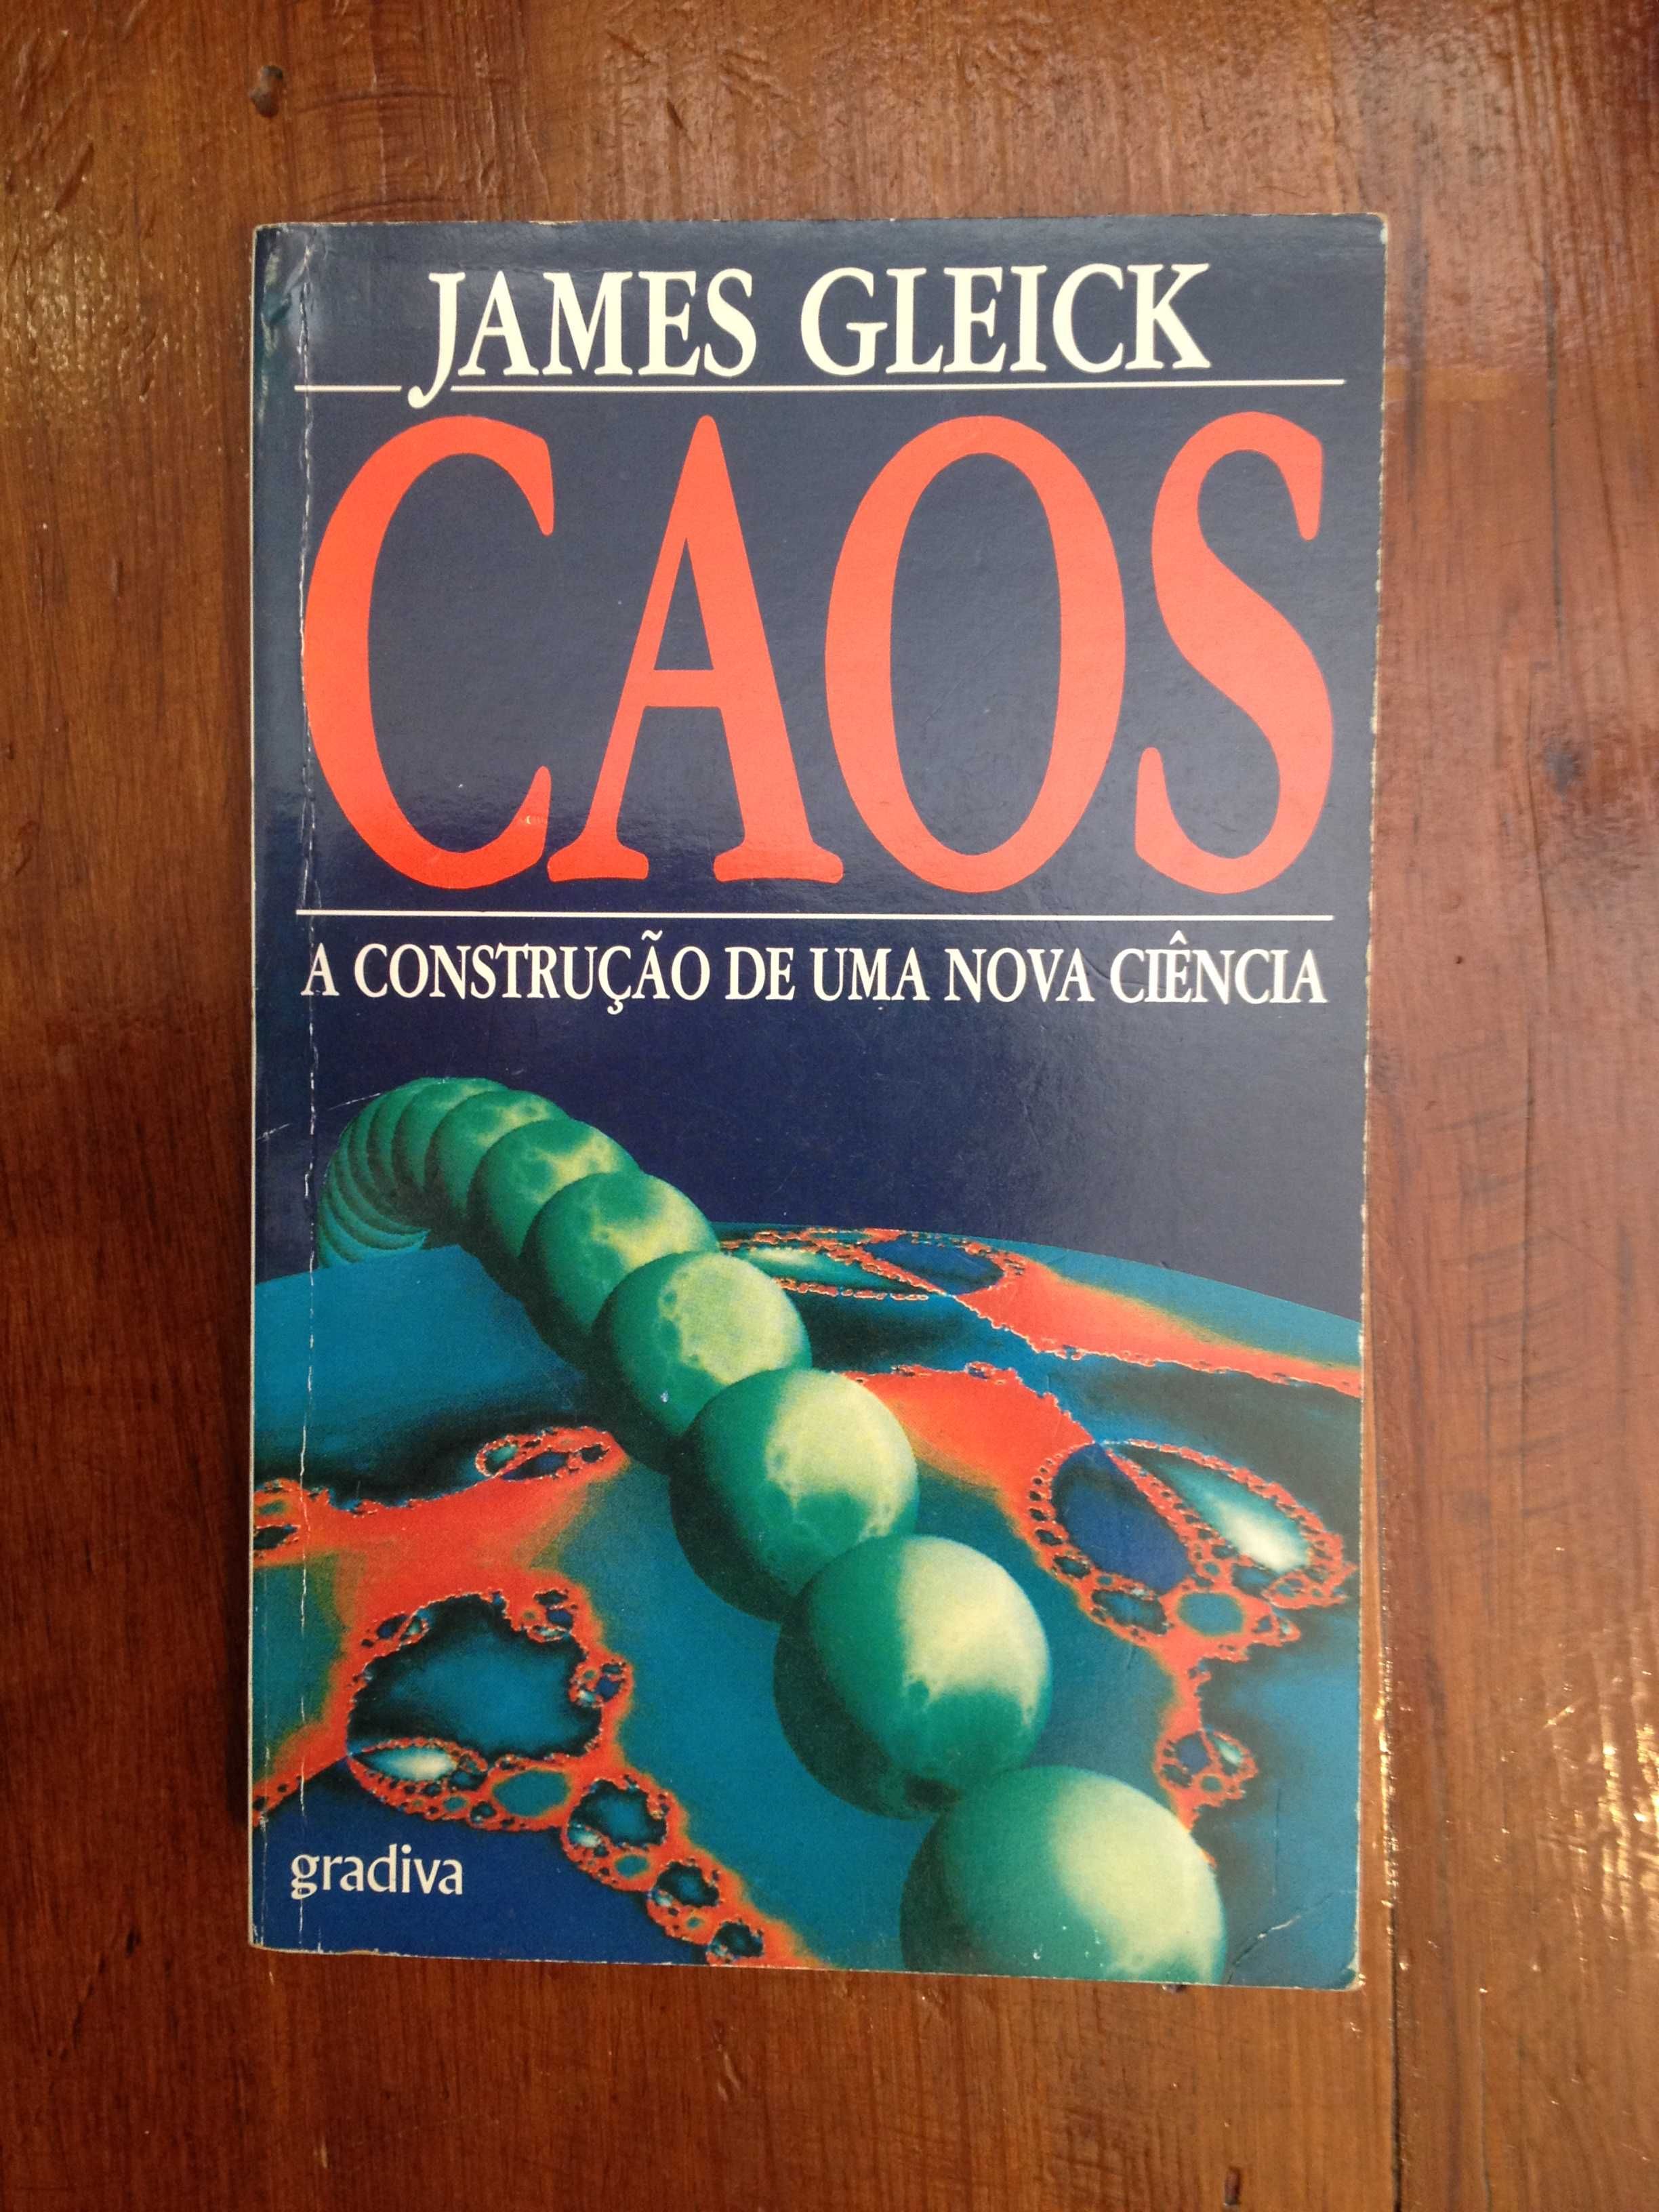 James Gleick - Caos